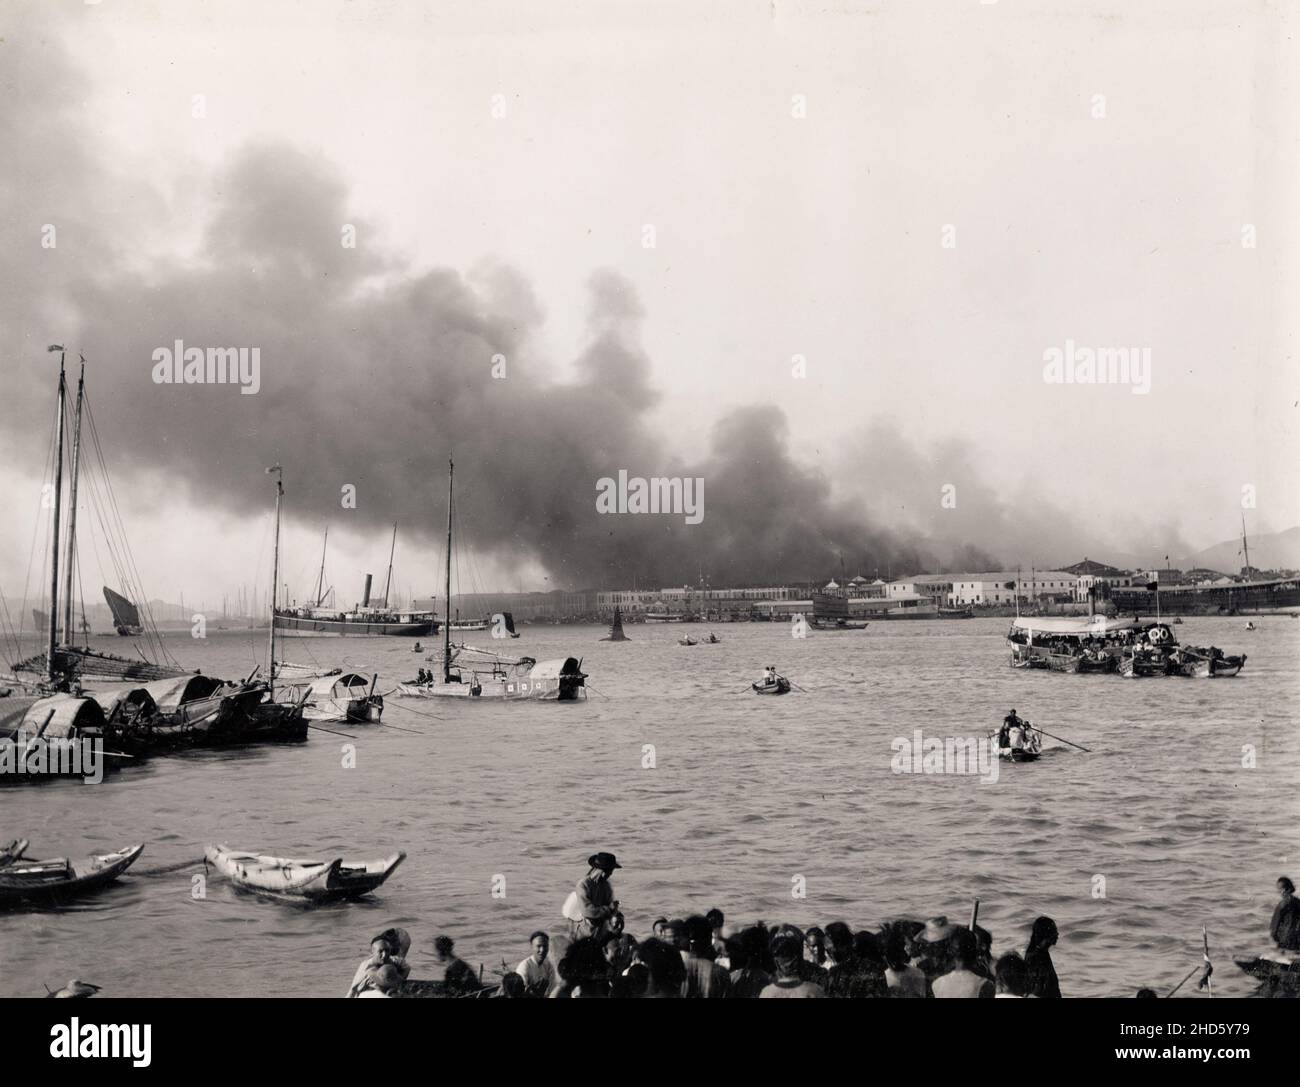 Fotografia vintage fine 19th secolo: Fuoco magazzino sul fronte del porto, possibilmente Canton, Guangzhou, Cina, c..1900. Foto Stock